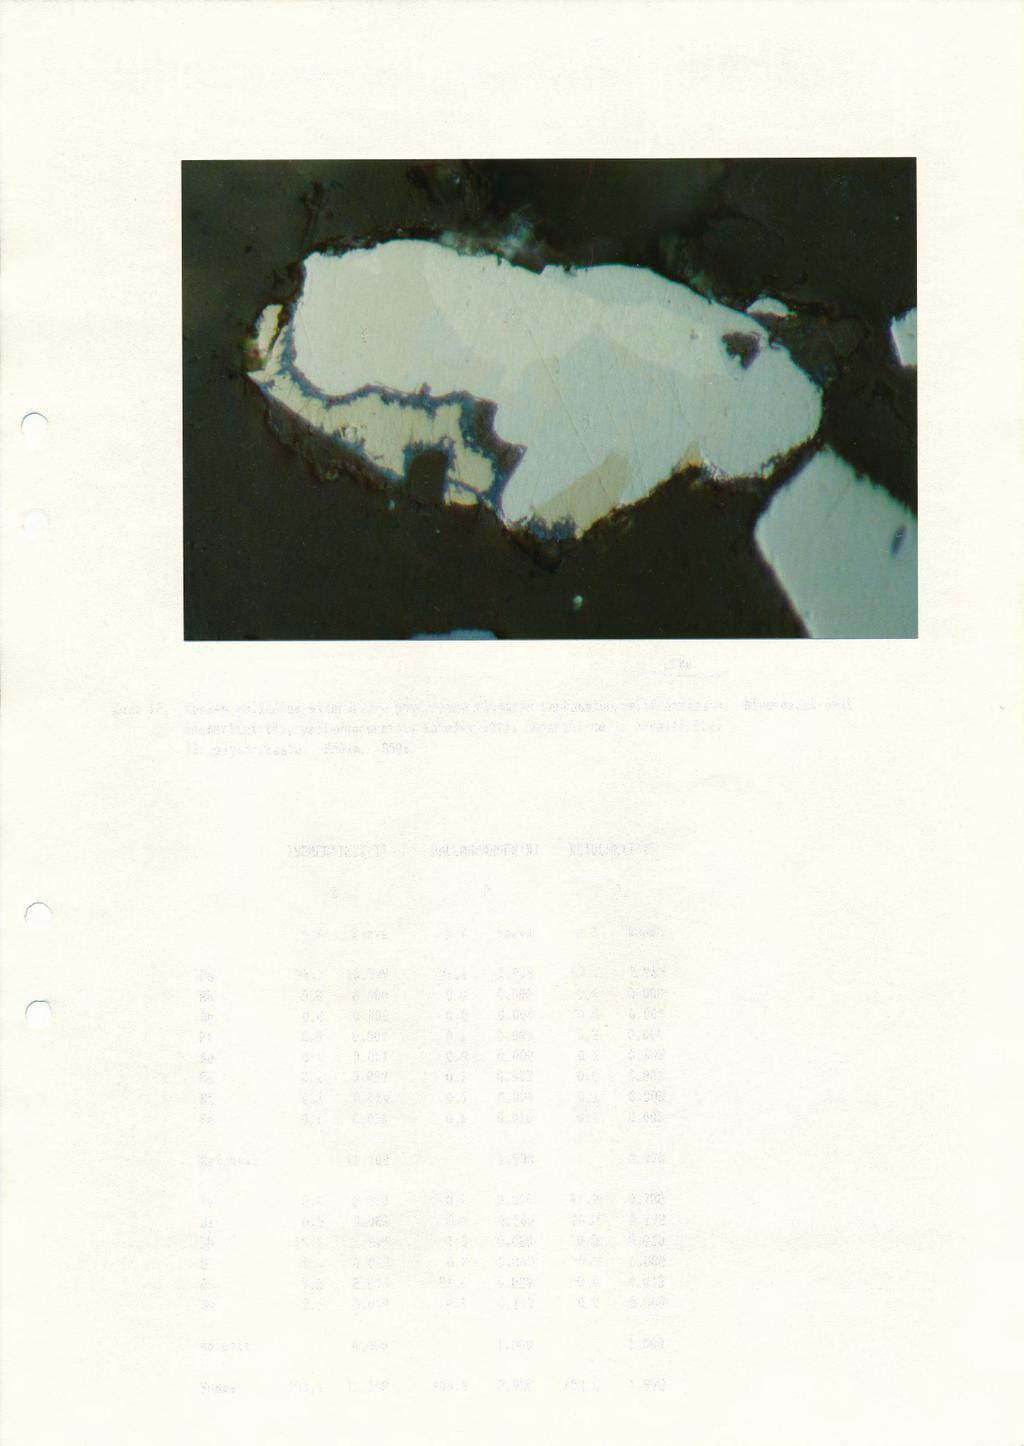 Kuva 12. Kookas palladium-mineraalien yhteenkasvettumarae raskasmineraalifraktiossa.